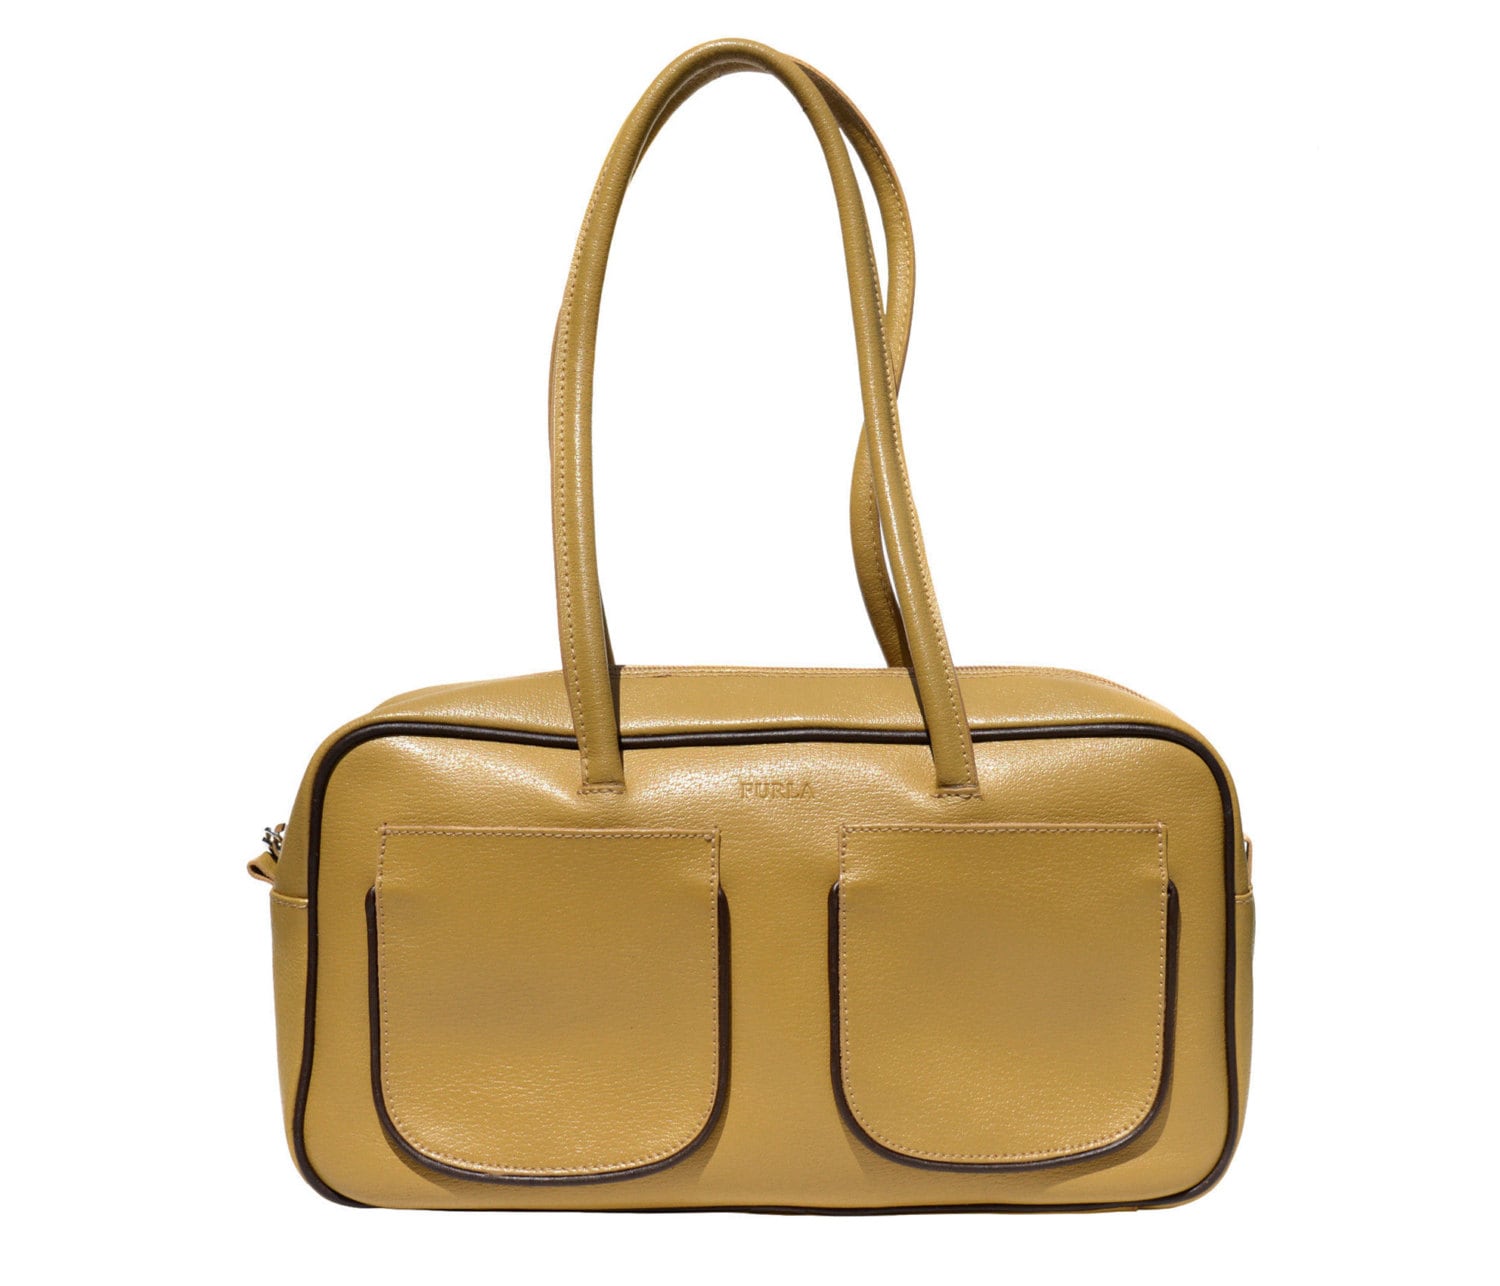 Vintage Furla bag purse caramel beige genuine leather made in